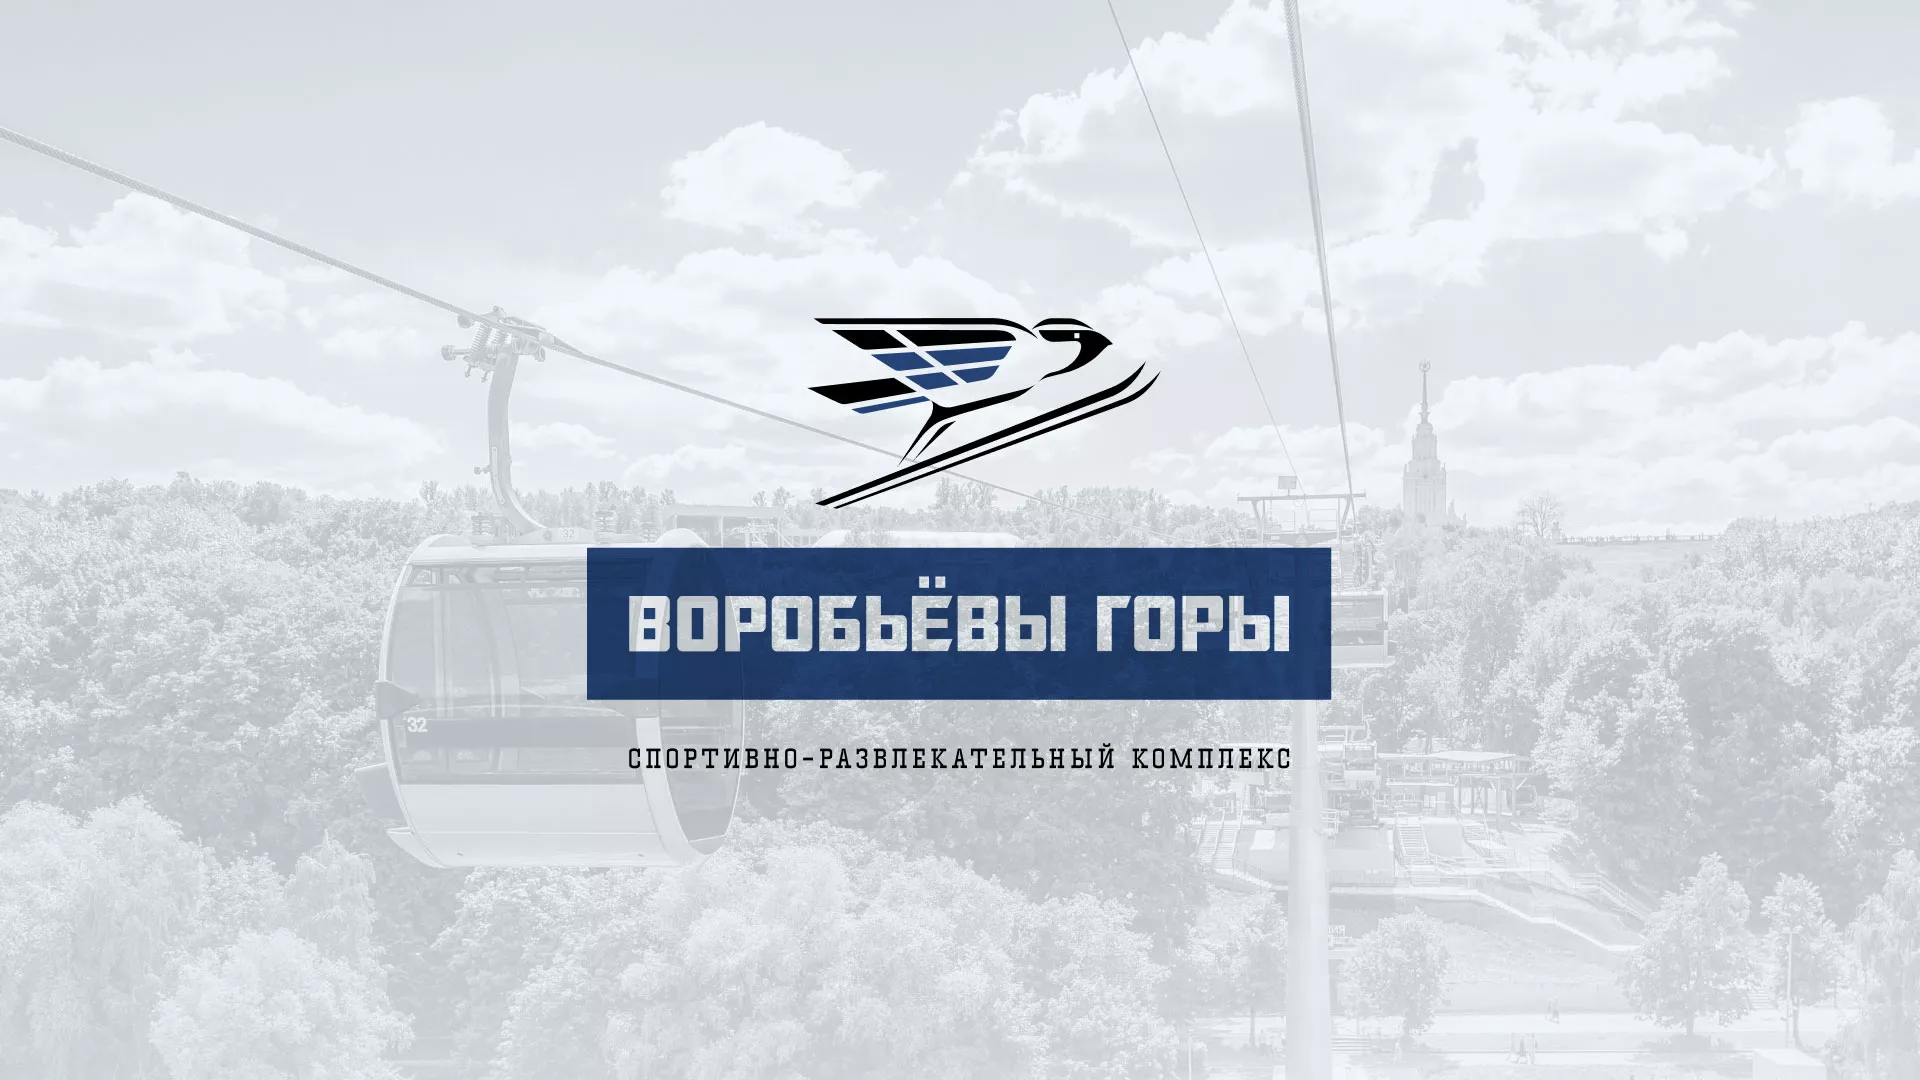 Разработка сайта в Полысаево для спортивно-развлекательного комплекса «Воробьёвы горы»